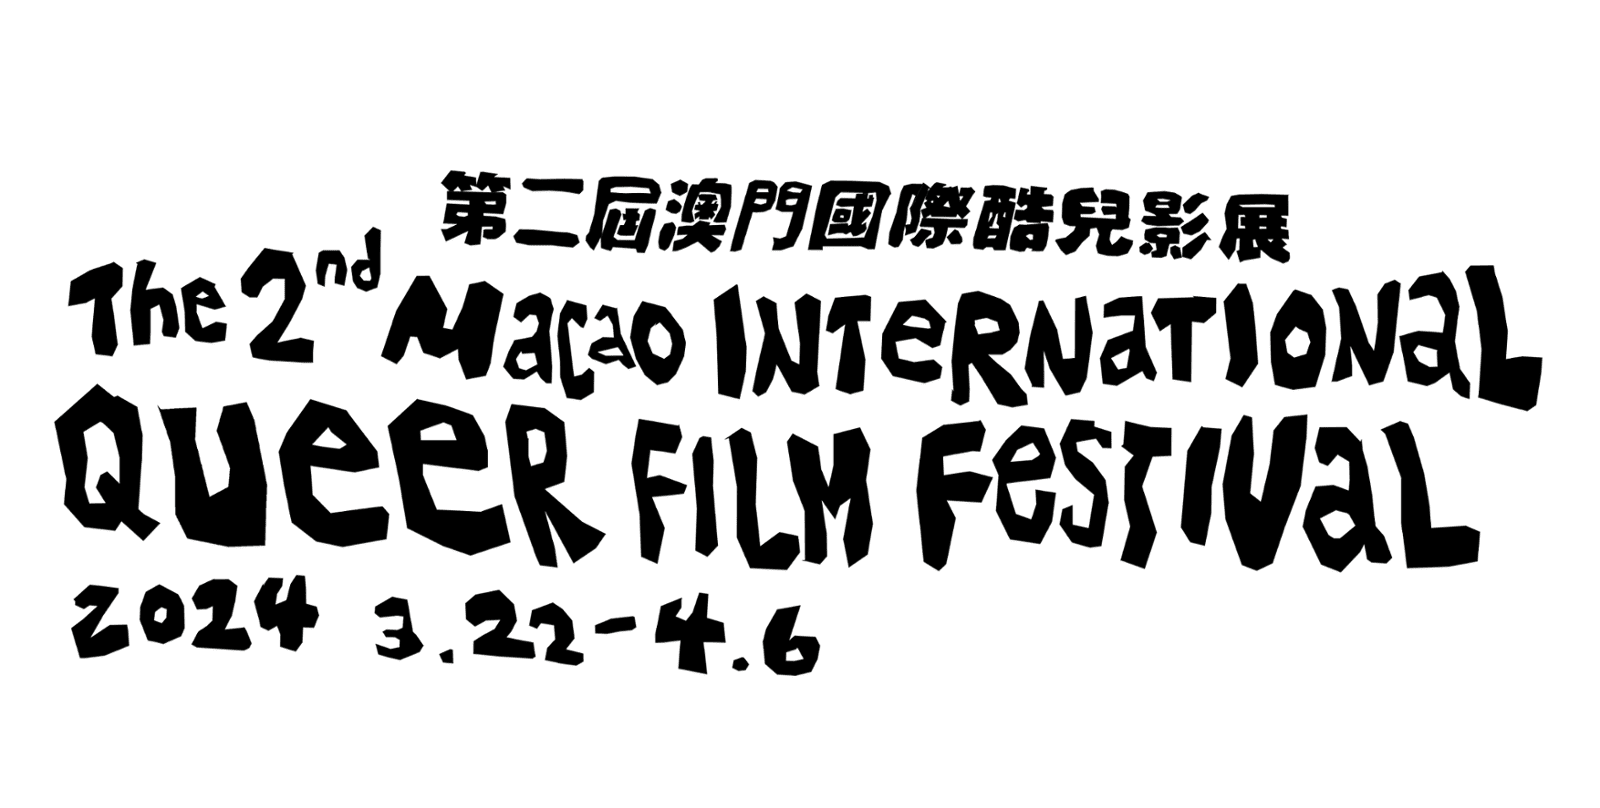 澳門國際酷兒影展 Macao International Queer Film Festival